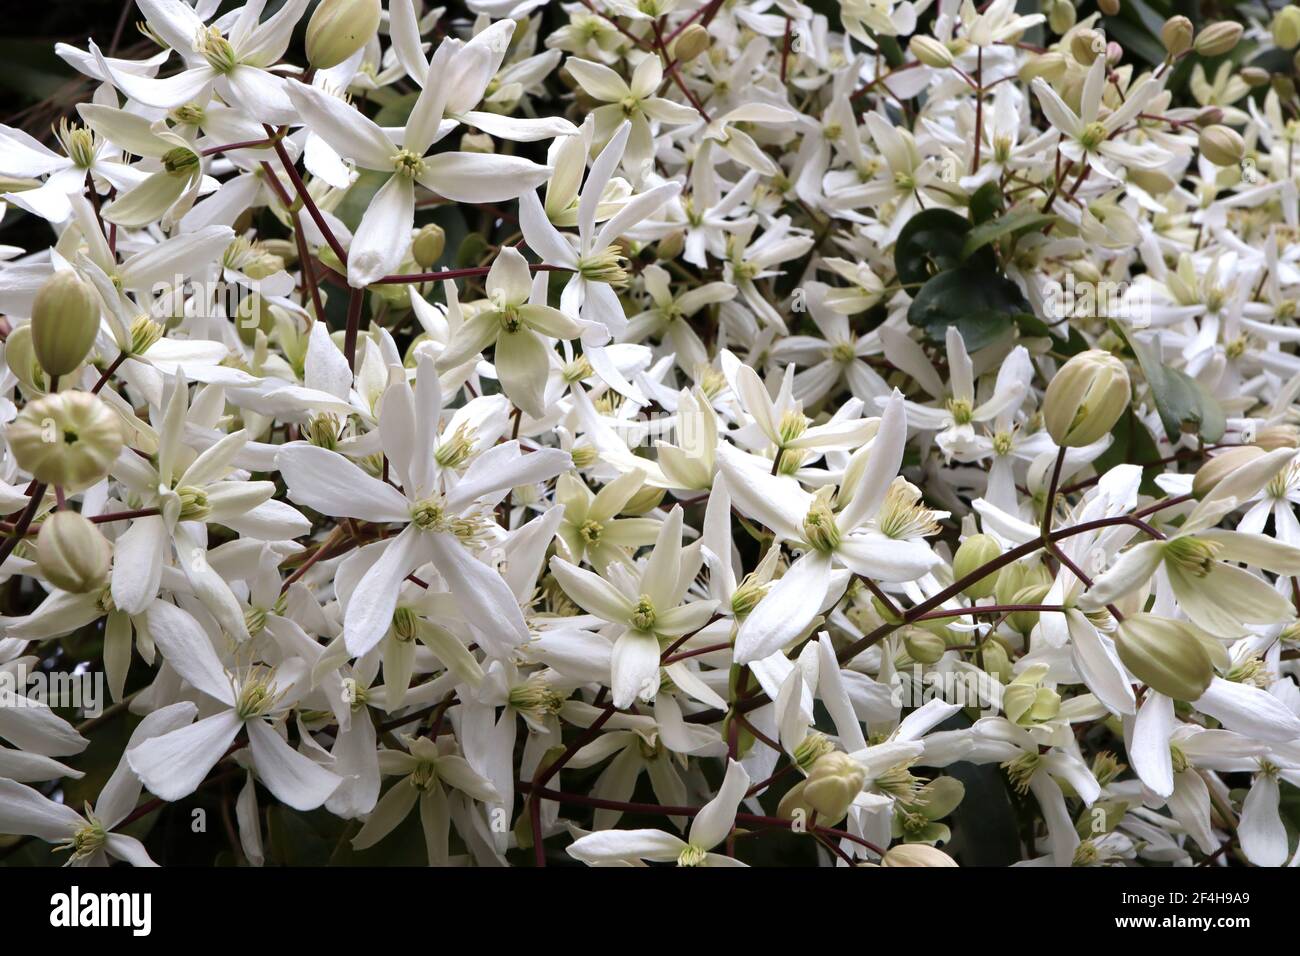 Clematis armandii ‘Snowdrift’ Armand clematis – impianto di arrampicata con grappoli di grandi fiori bianchi profumati a forma di stella, marzo, Inghilterra, Regno Unito Foto Stock